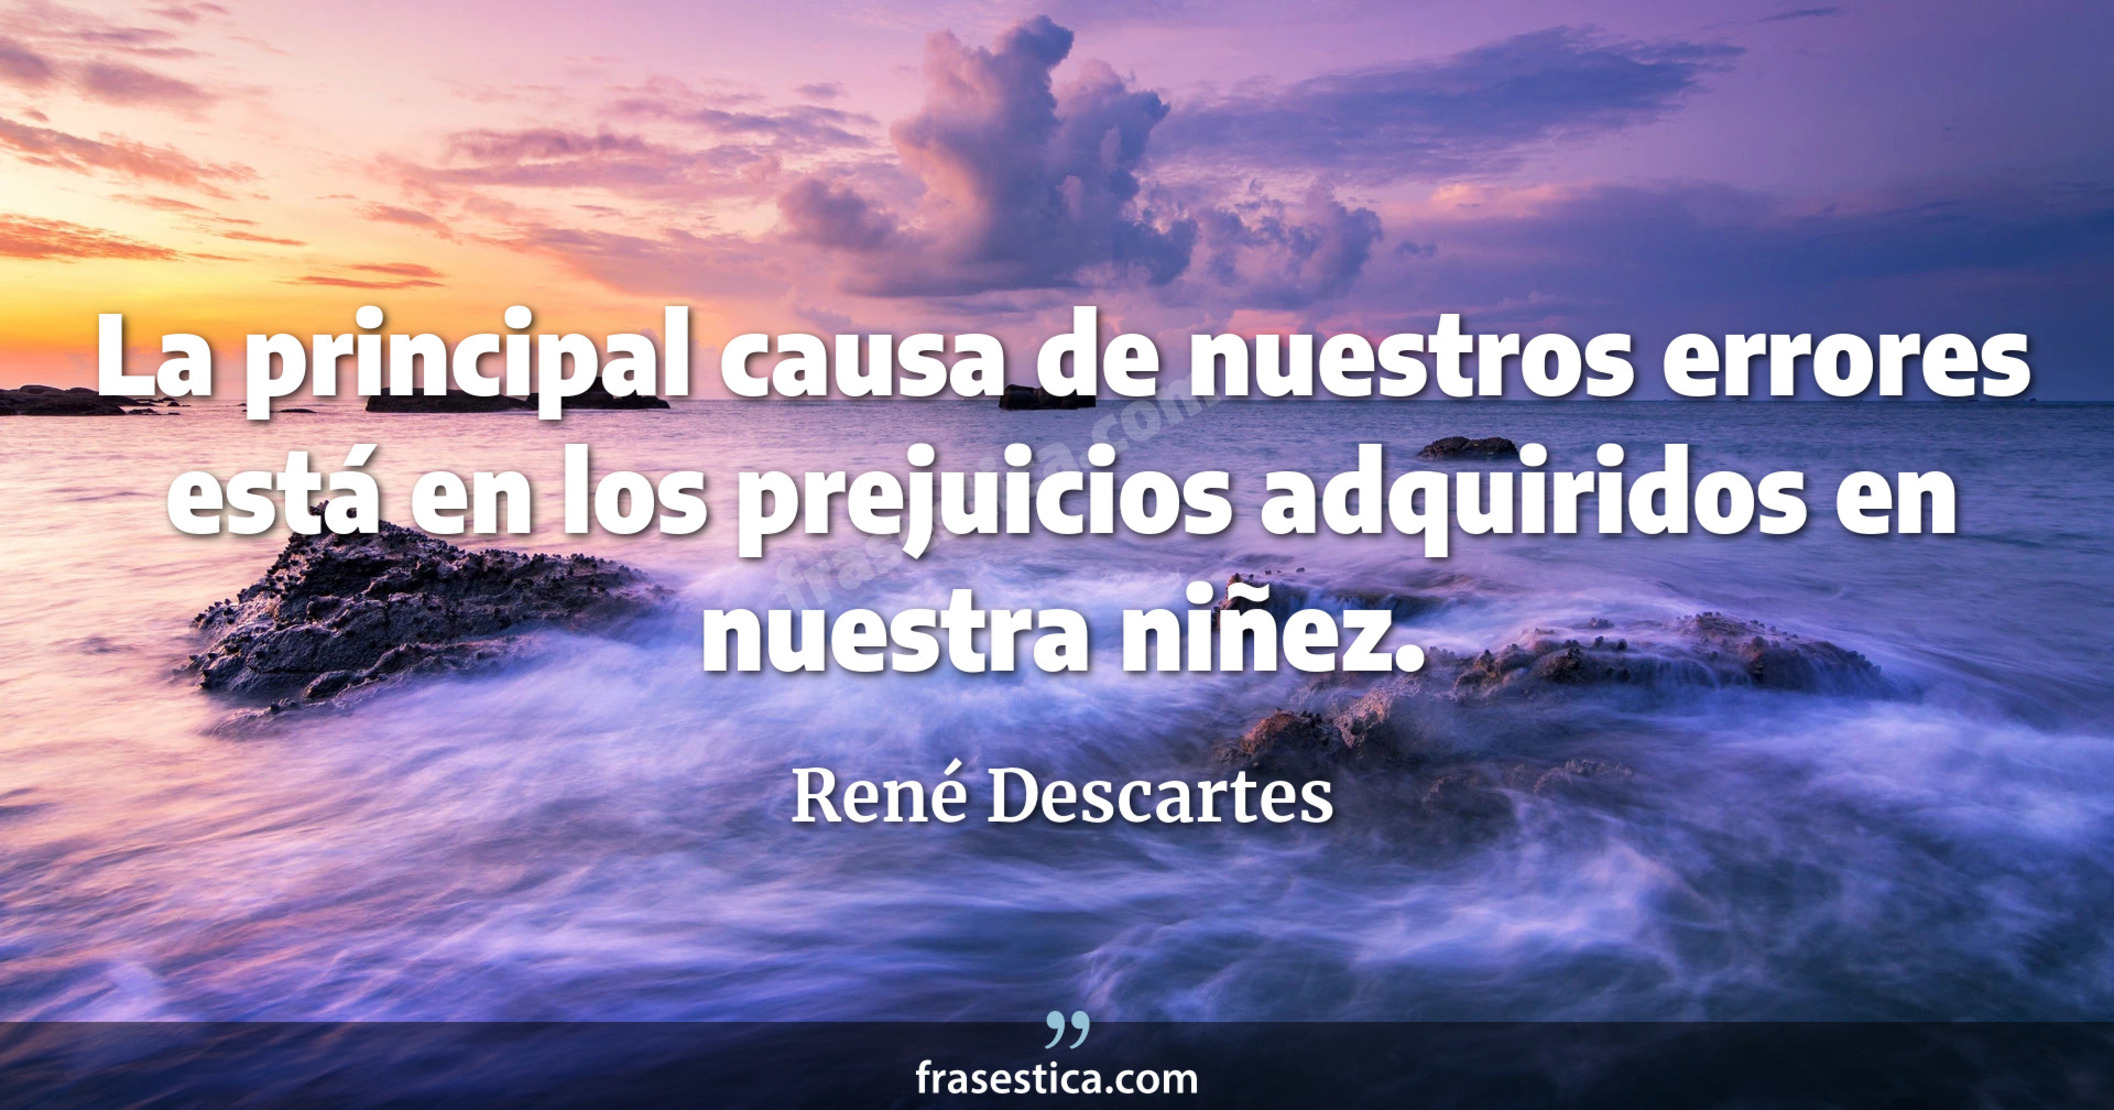 La principal causa de nuestros errores está en los prejuicios adquiridos en nuestra niñez. - René Descartes